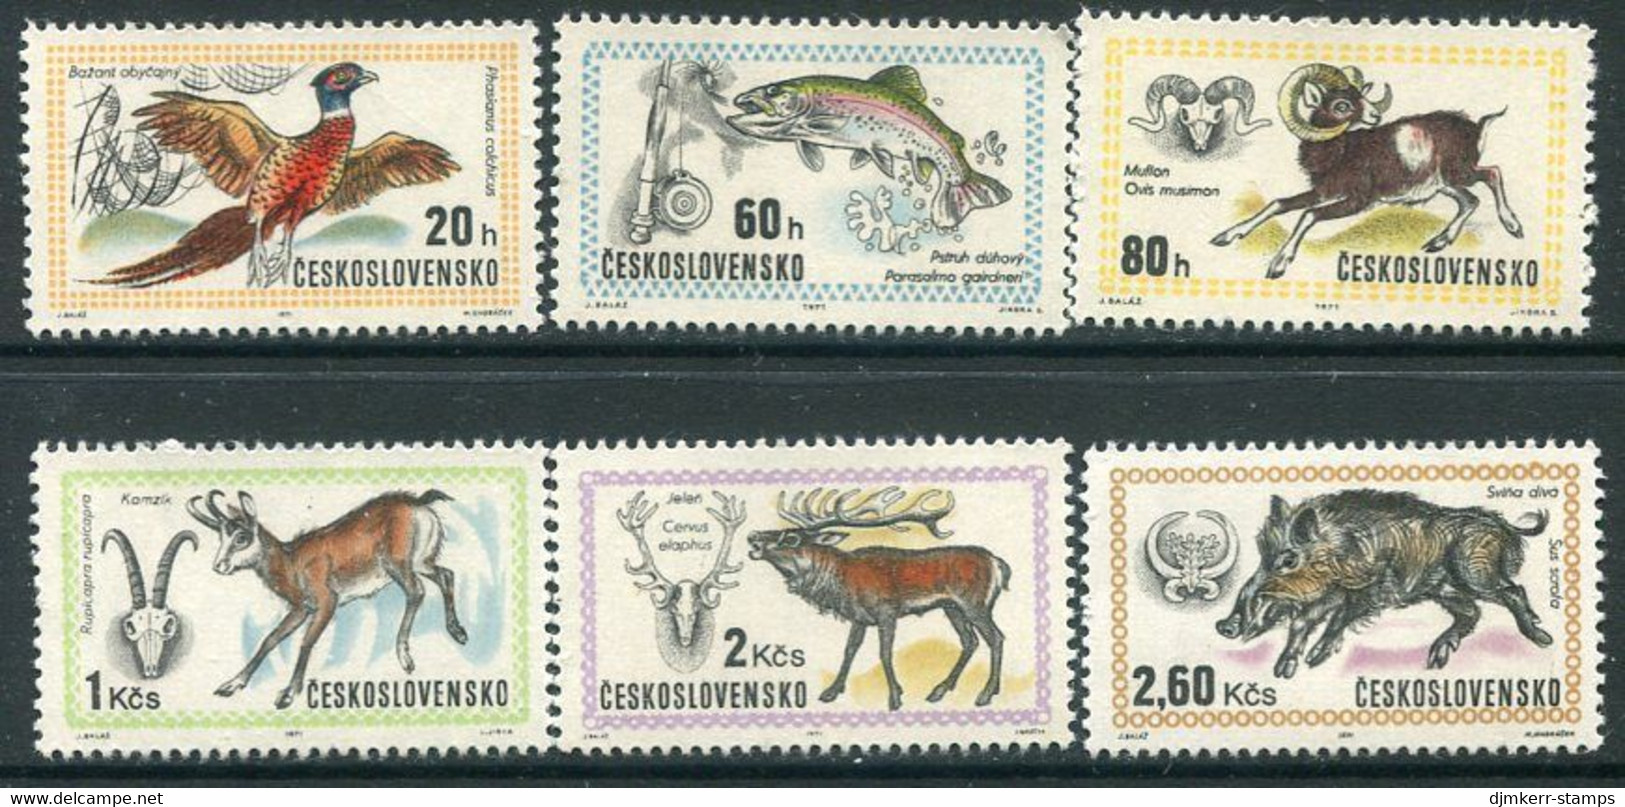 CZECHOSLOVAKIA 1971 Hunting Exhibition MNH / **  Michel 2014-19 - Ungebraucht